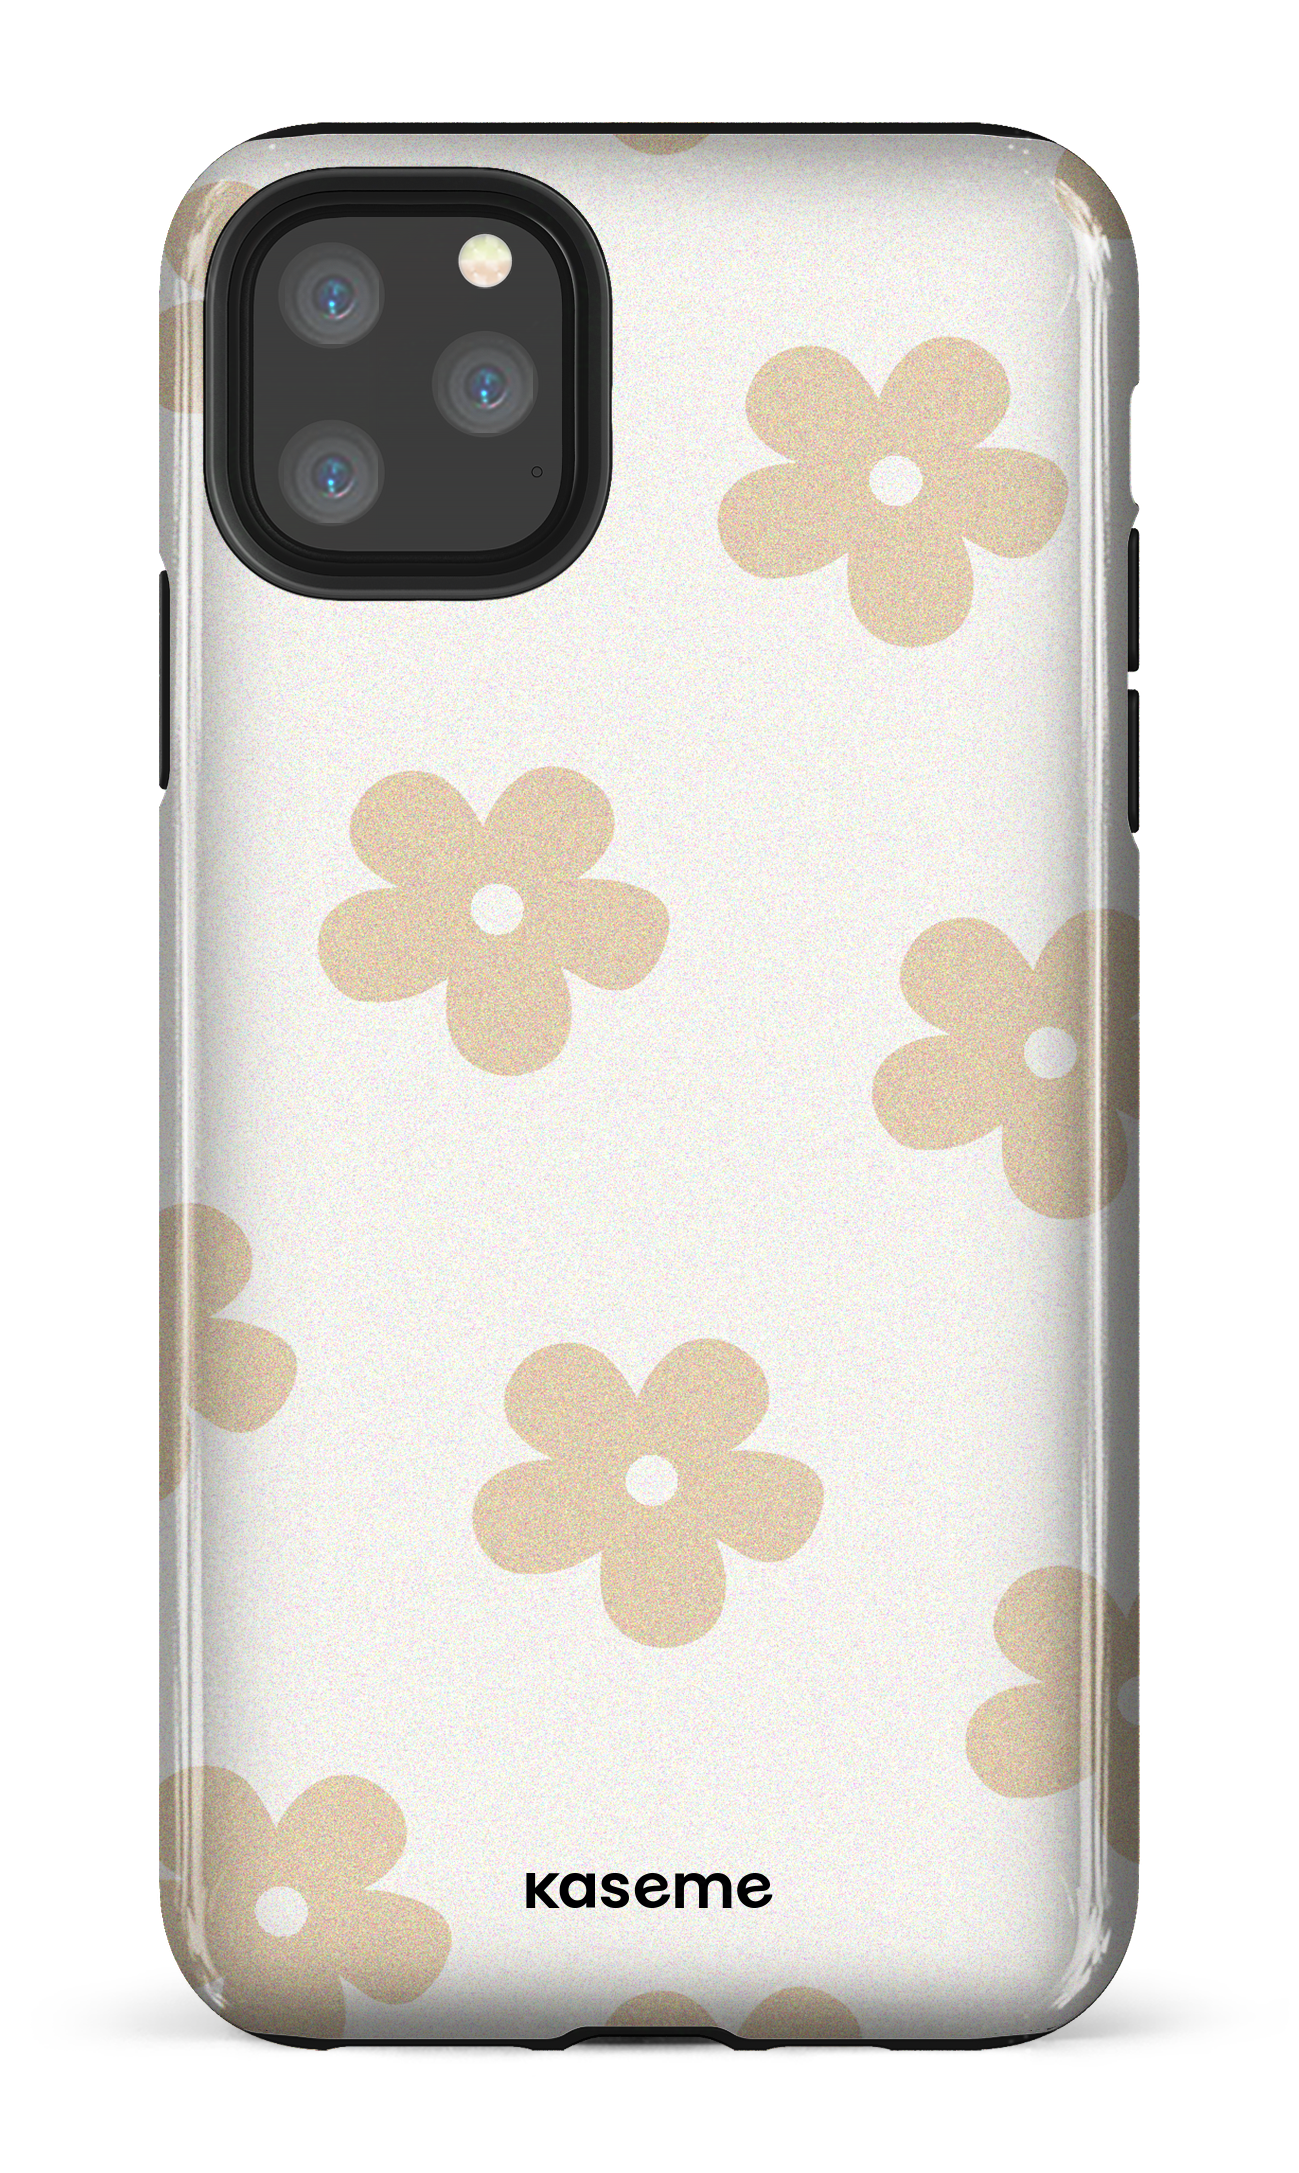 Woodstock beige - iPhone 11 Pro Max